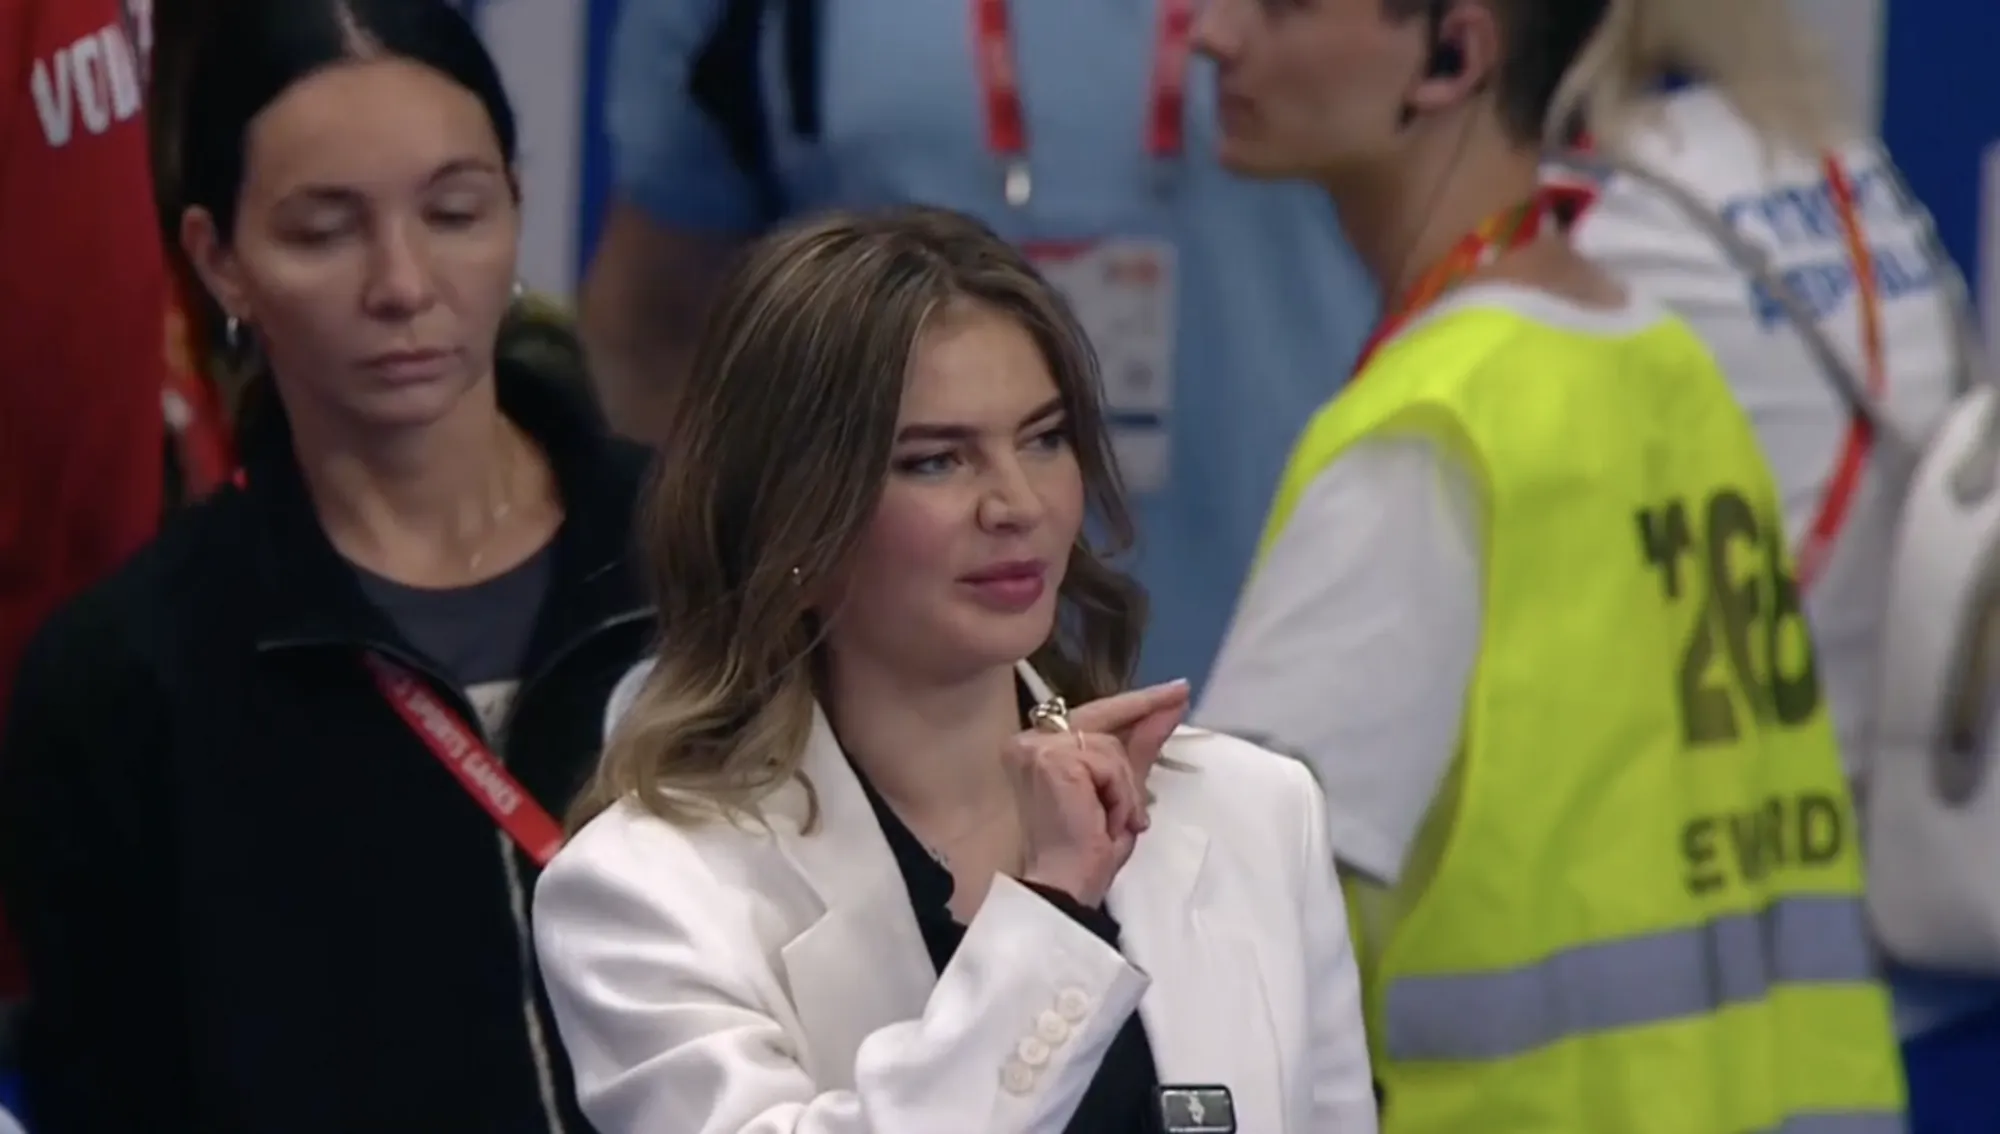 "Любовница Путина" Кабаева не смогла перекрестить спортсменку и стала посмешищем. Видео